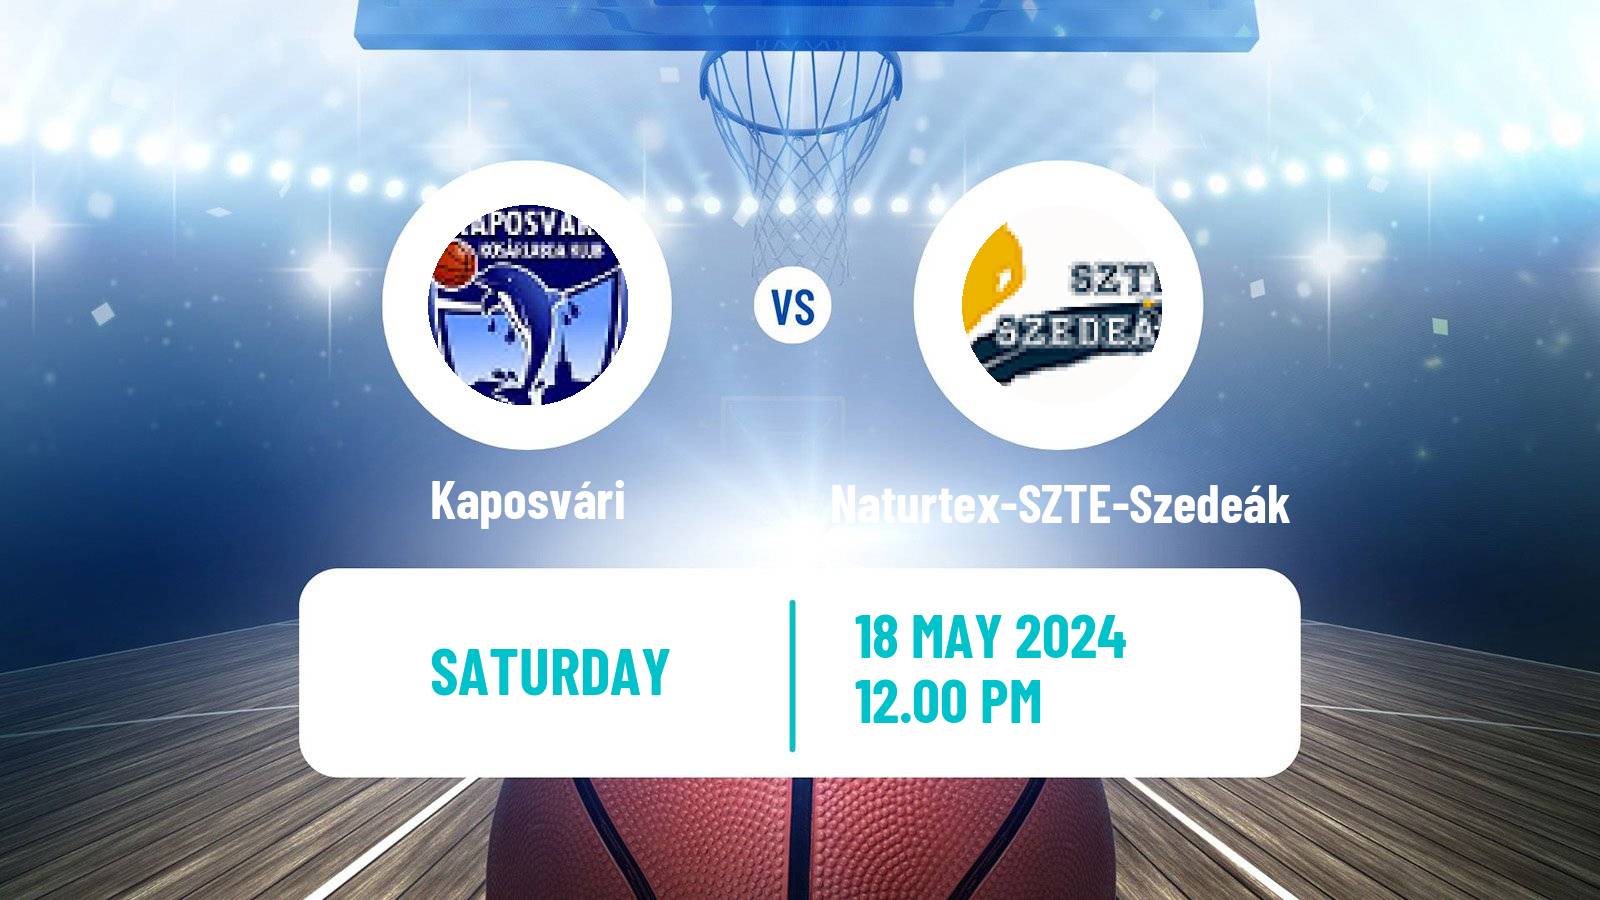 Basketball Hungarian NB I Basketball Kaposvári - Naturtex-SZTE-Szedeák